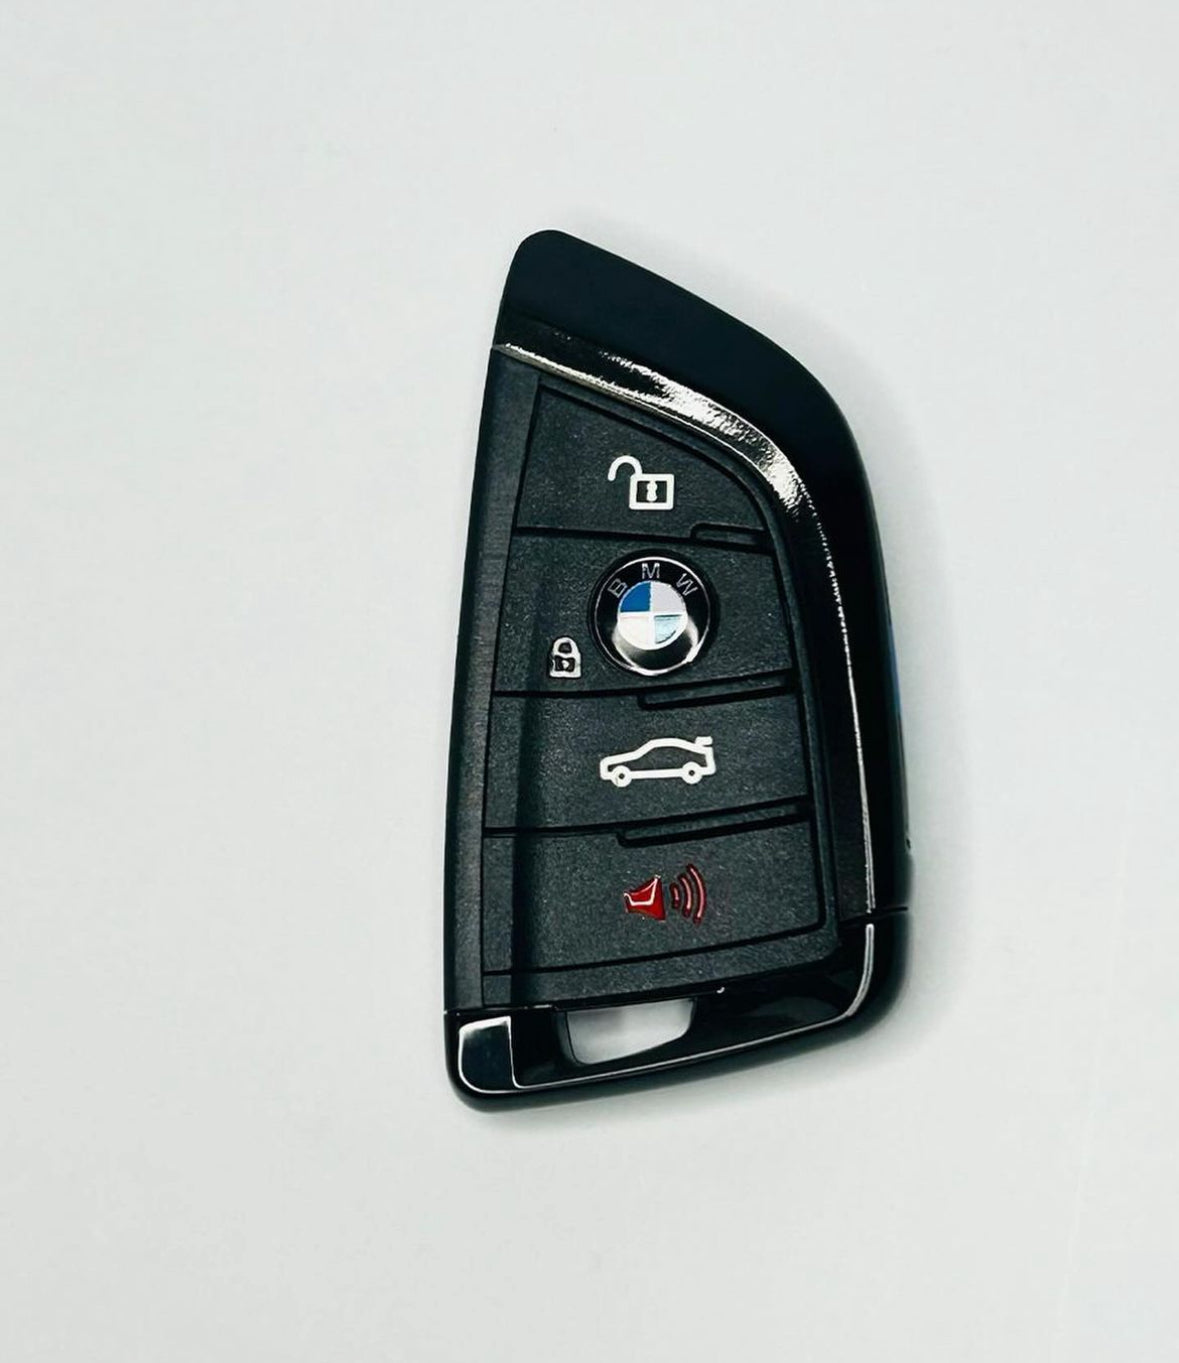 BMW G-Serie Upgrade Key für BMW F-Serie (neuer und zusätzlicher Schlüssel)